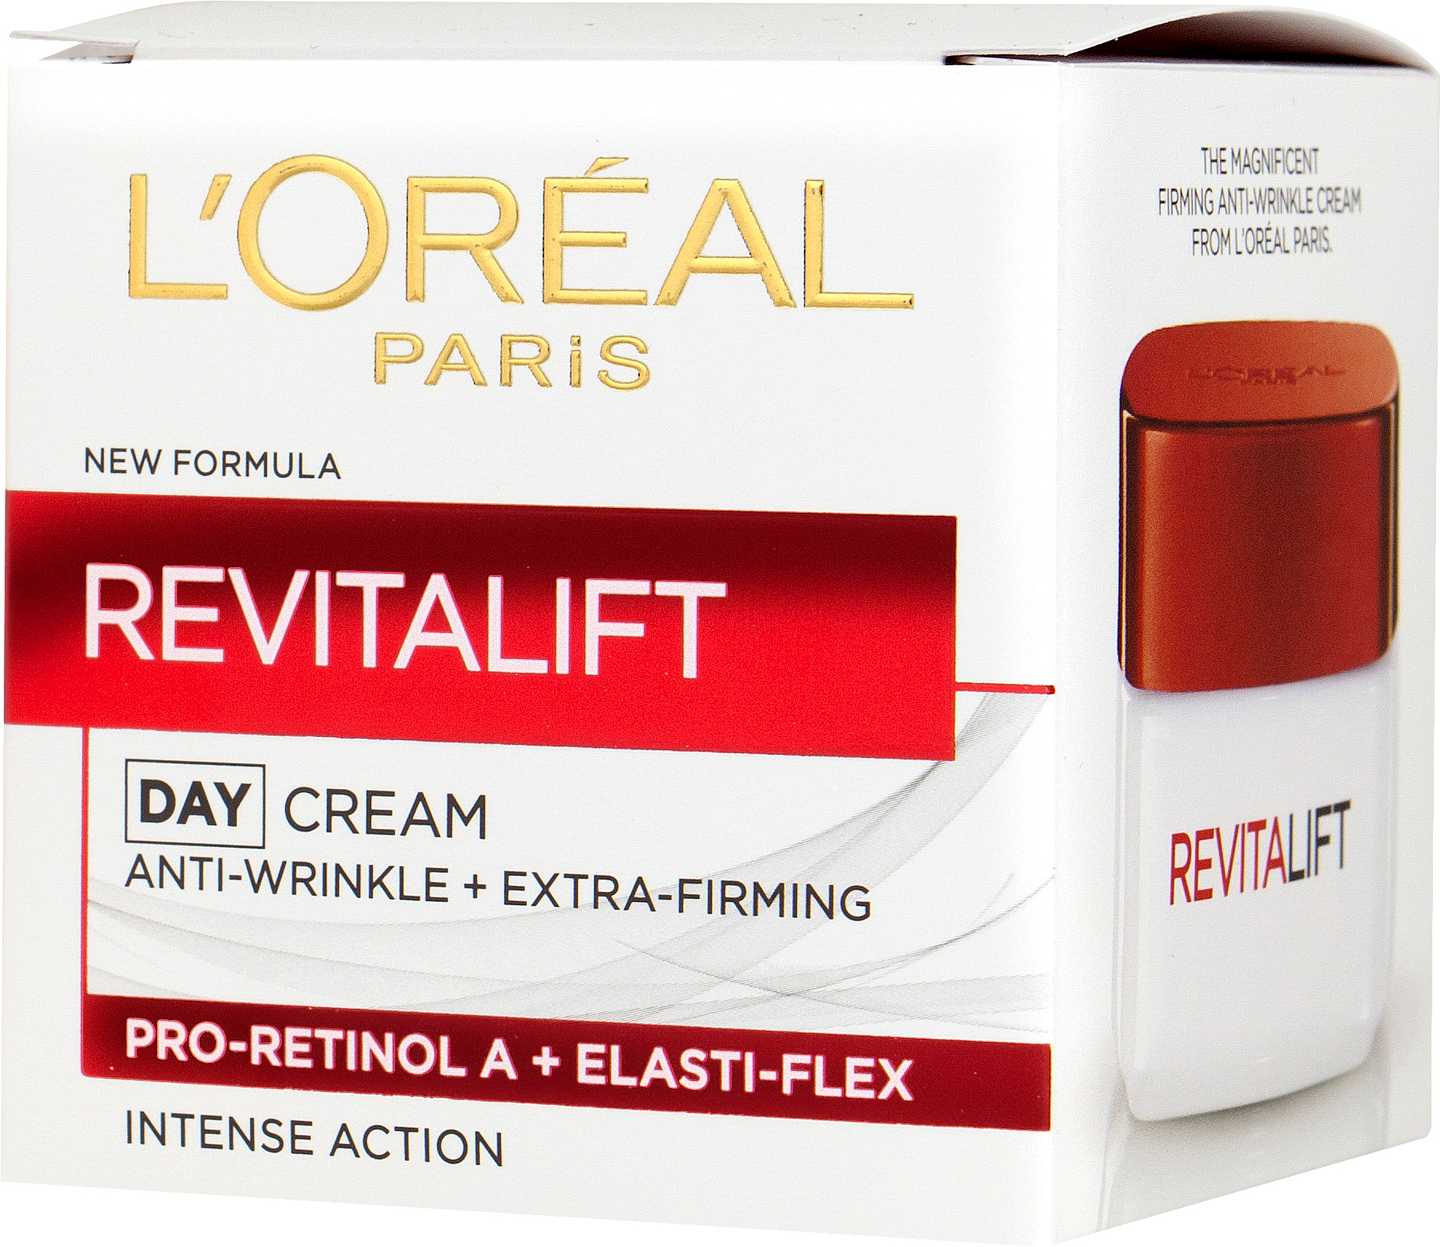 L'Oréal Paris Revitalift päivävoide 50ml ryppyjä silottava ja ihoa kiinteyttävä